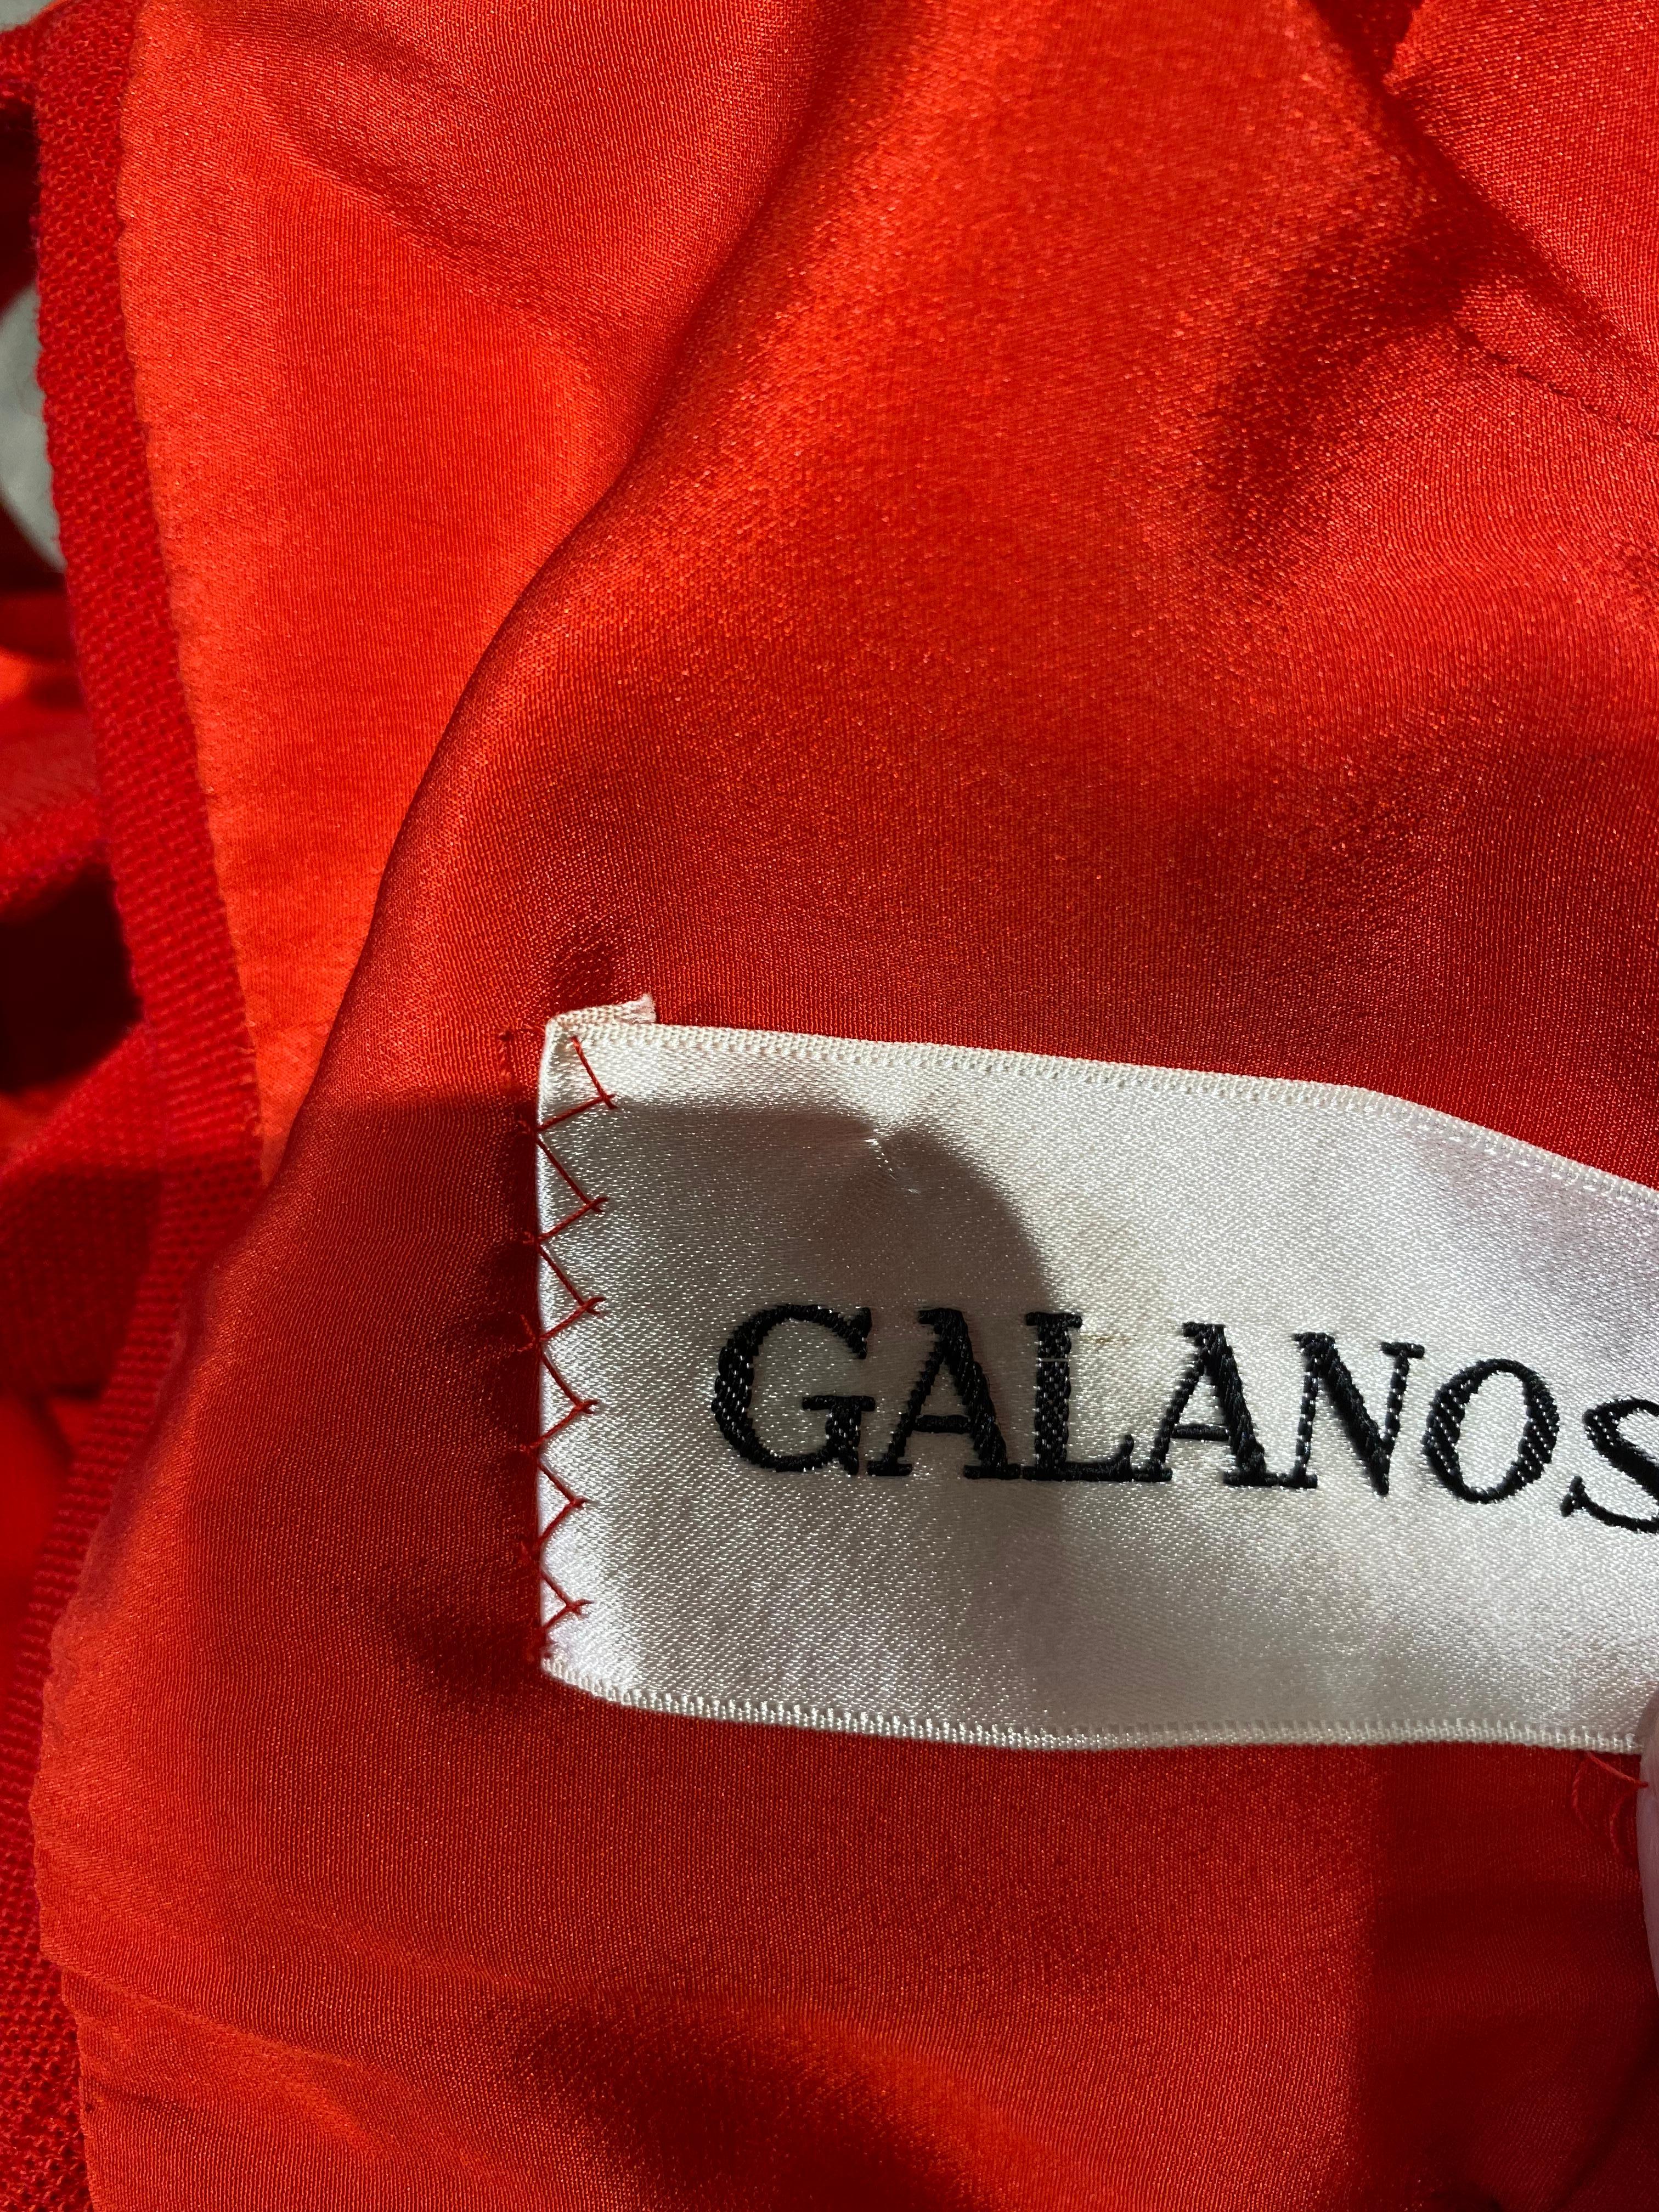 1970 James Galanos Robe dos nu en crêpe de laine rouge. 
Taille 2-4
Buste 32-36